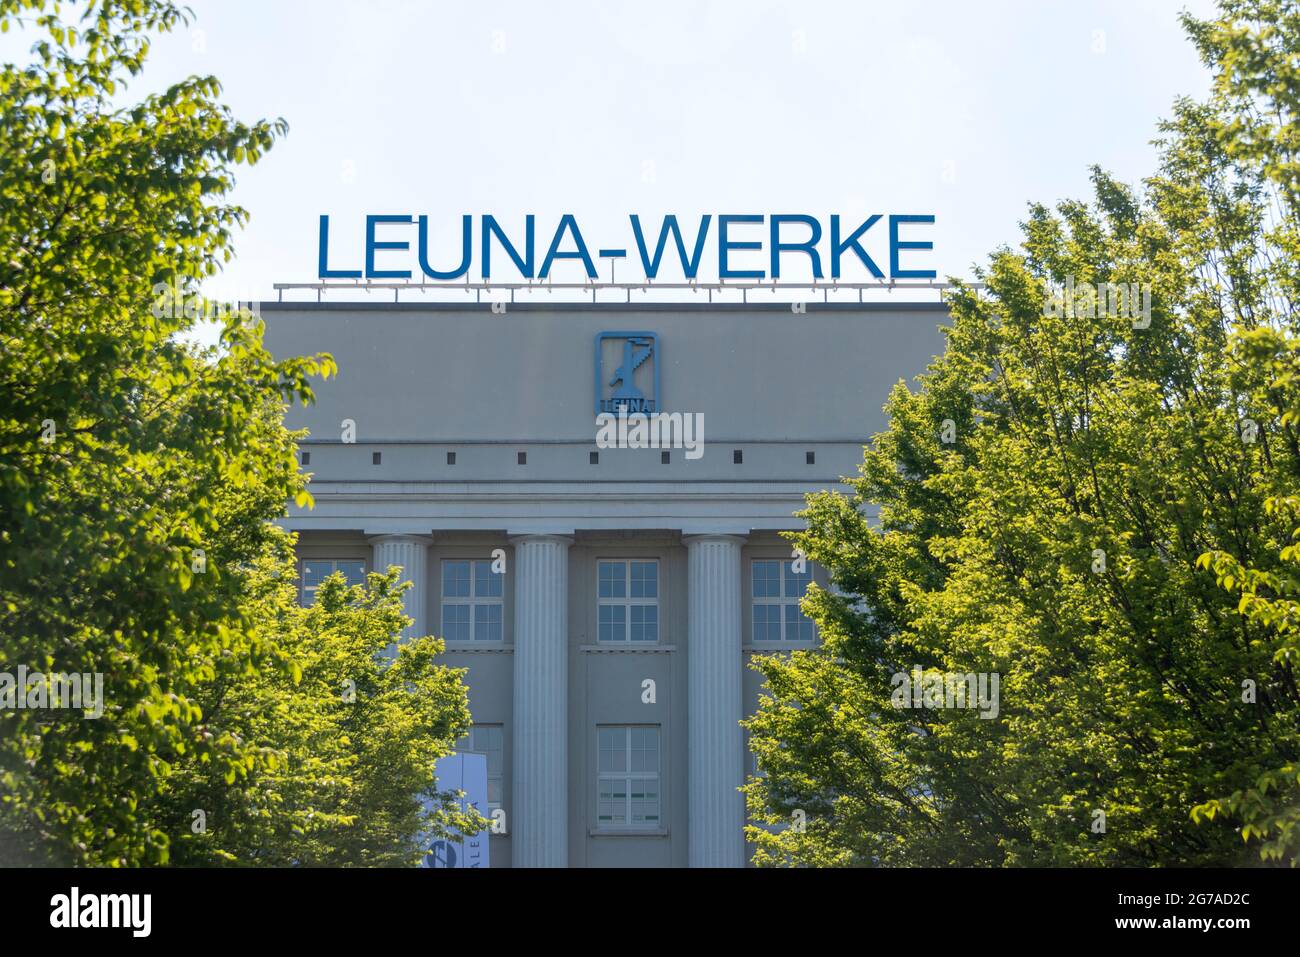 Deutschland, Sachsen-Anhalt, Leuna, Haupttor der Leuna-Werke, Chemiepark, Chemiedreieck, chemische Industrie Stockfoto